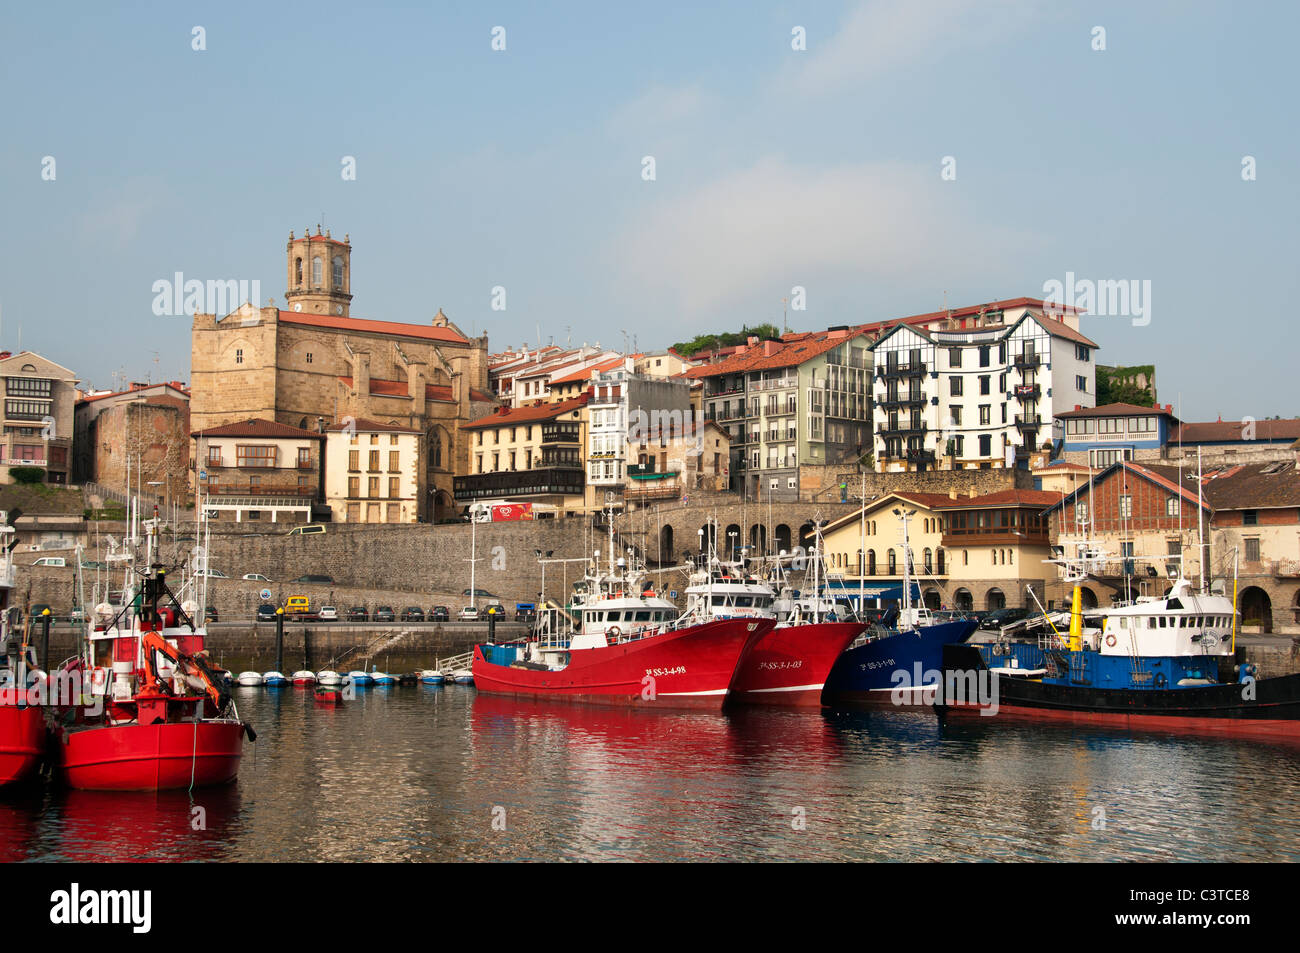 Getaria España viejo pescador Barco Barco de pescado del puerto Foto de stock